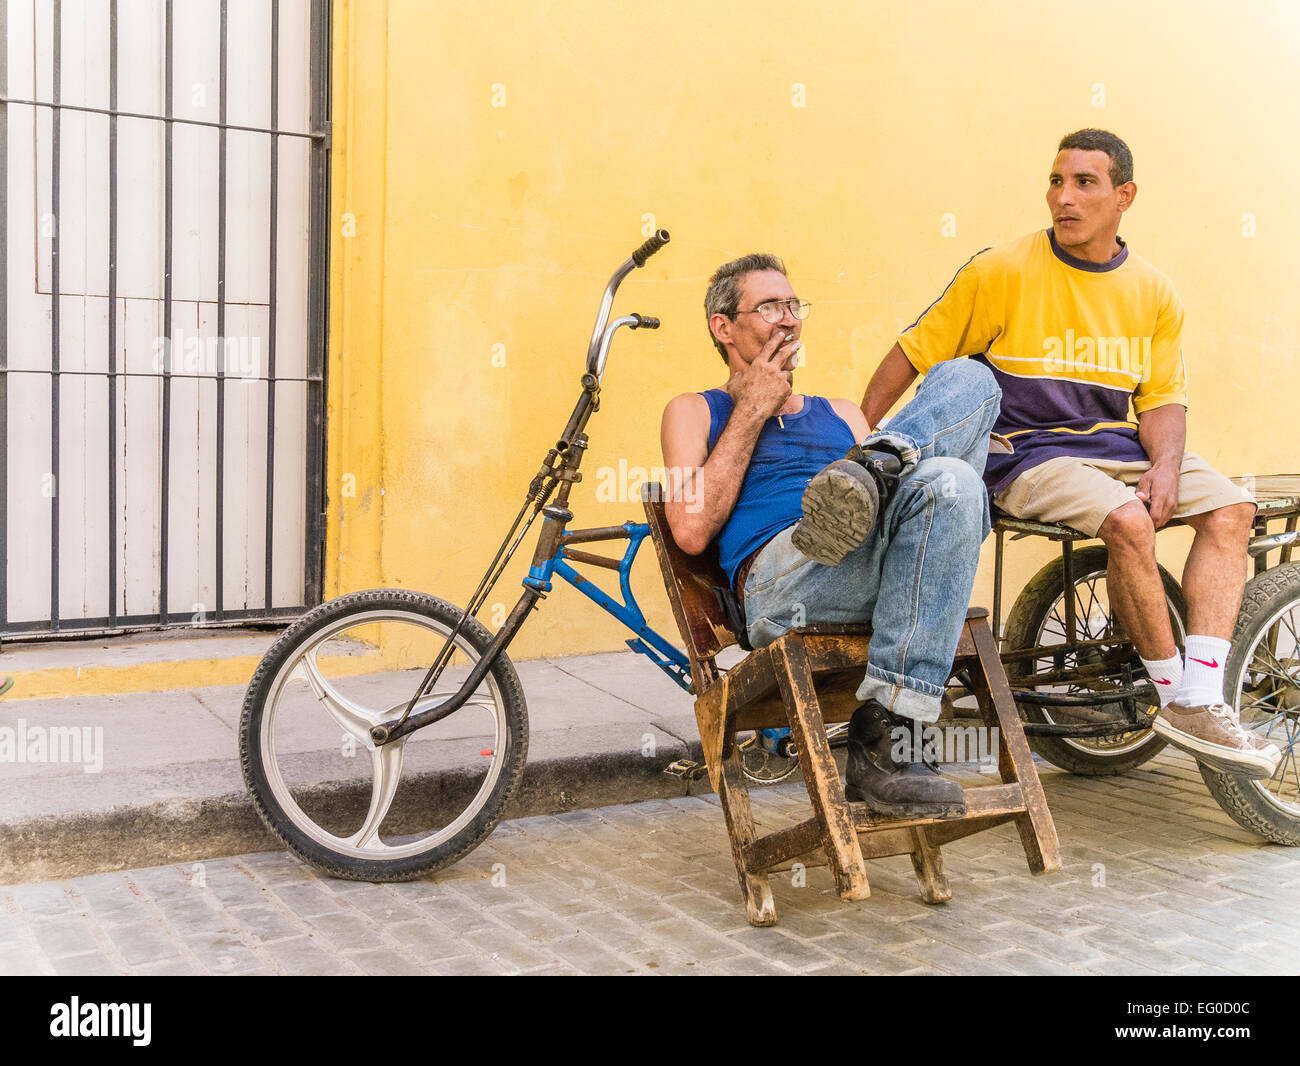 https://c8.alamy.com/compes/eg0d0c/dos-hombres-se-sientan-entrega-de-bicicletas-por-su-entrega-3-ruedas-bicicletas-contra-una-pared-amarilla-y-hablar-en-la-habana-vieja-cuba-eg0d0c.jpg